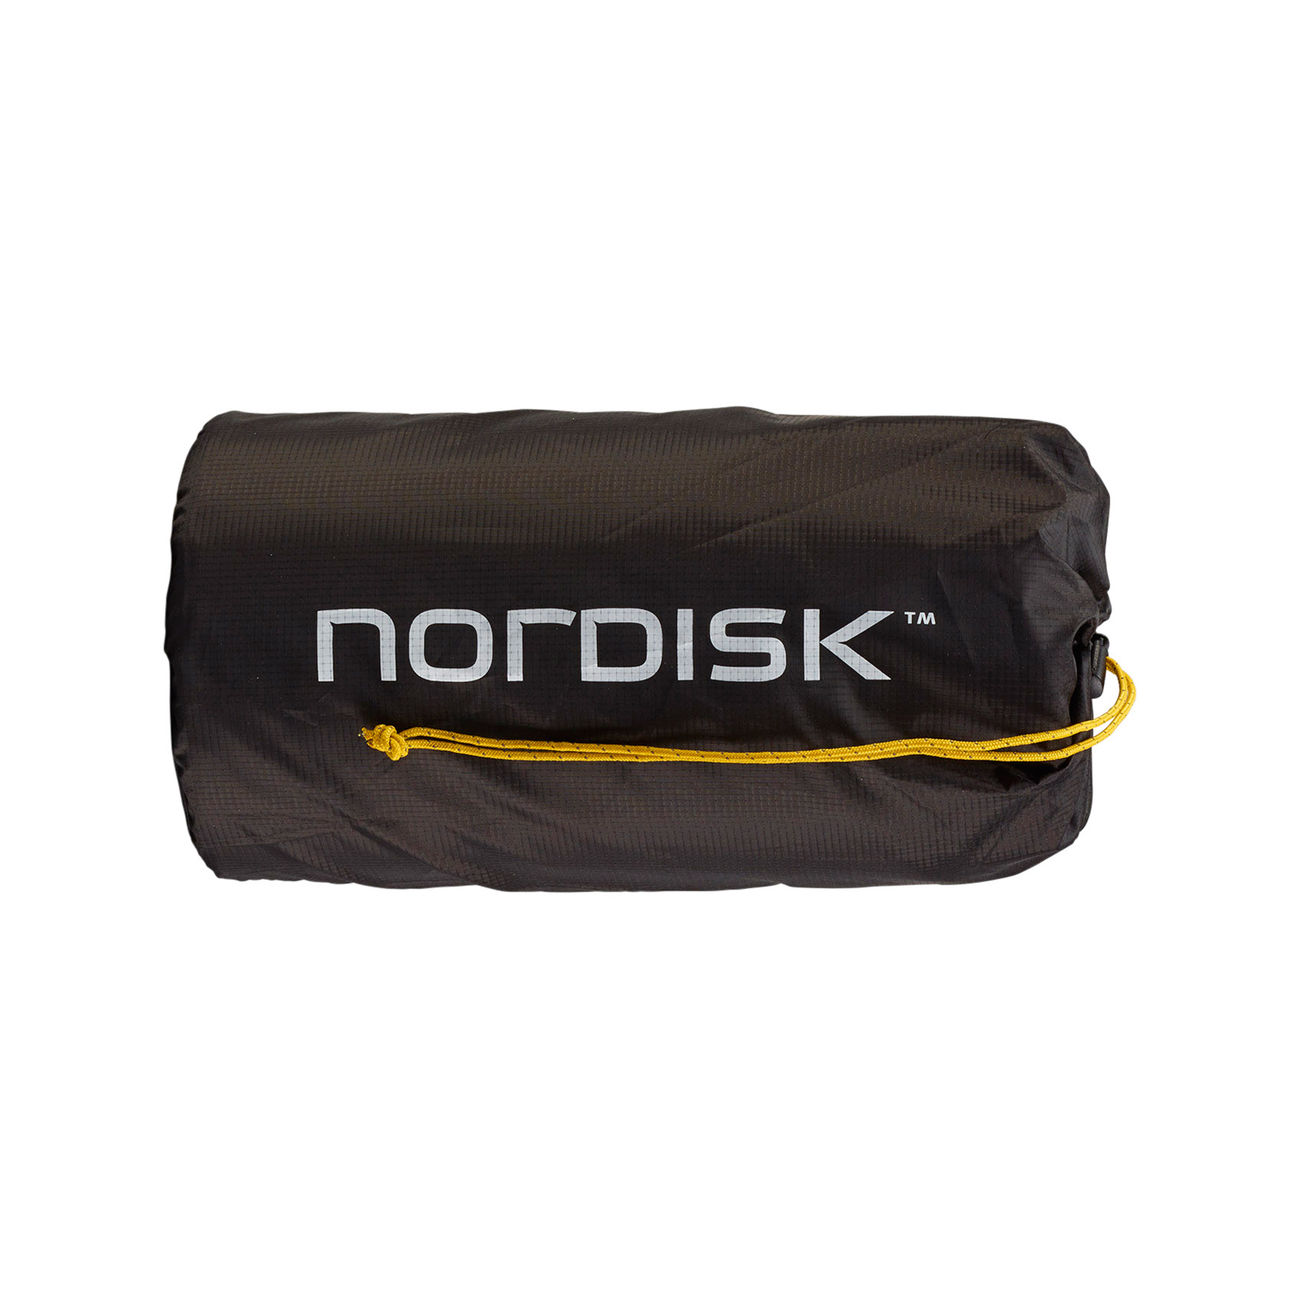 Nordisk Isomatte Grip 3.8 R gelb /schwarz selbstaufblasend mit extrem kleinem Packmaß Bild 1